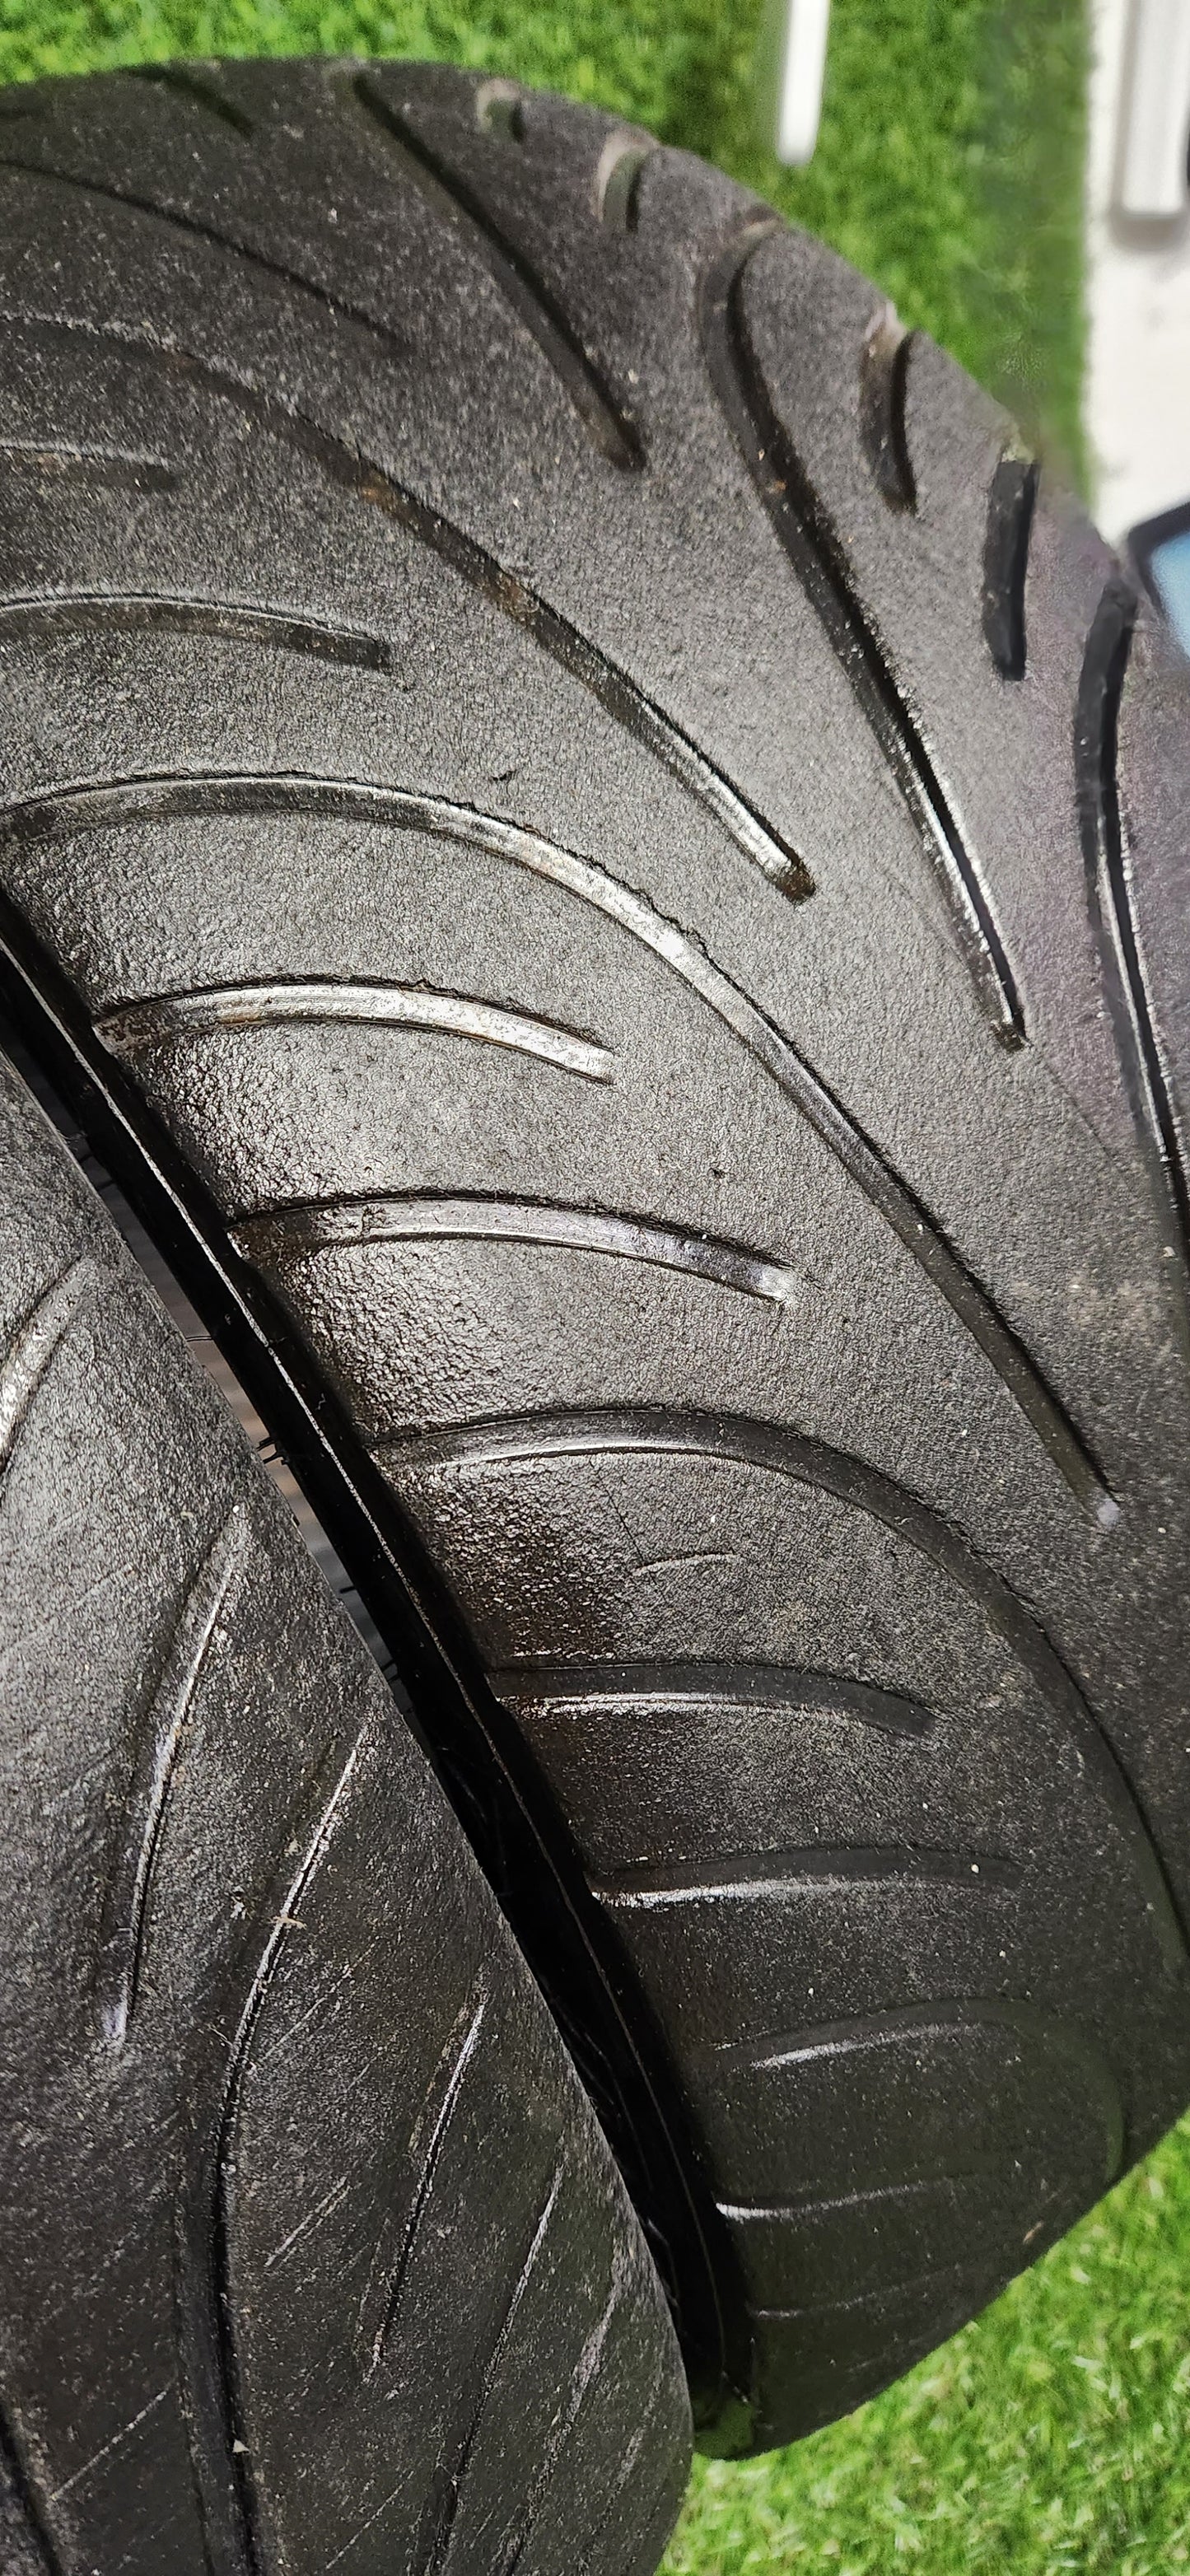 Dunlop 185/58/15 Wet Racing Tyres - Set of 4 (195/50/15)